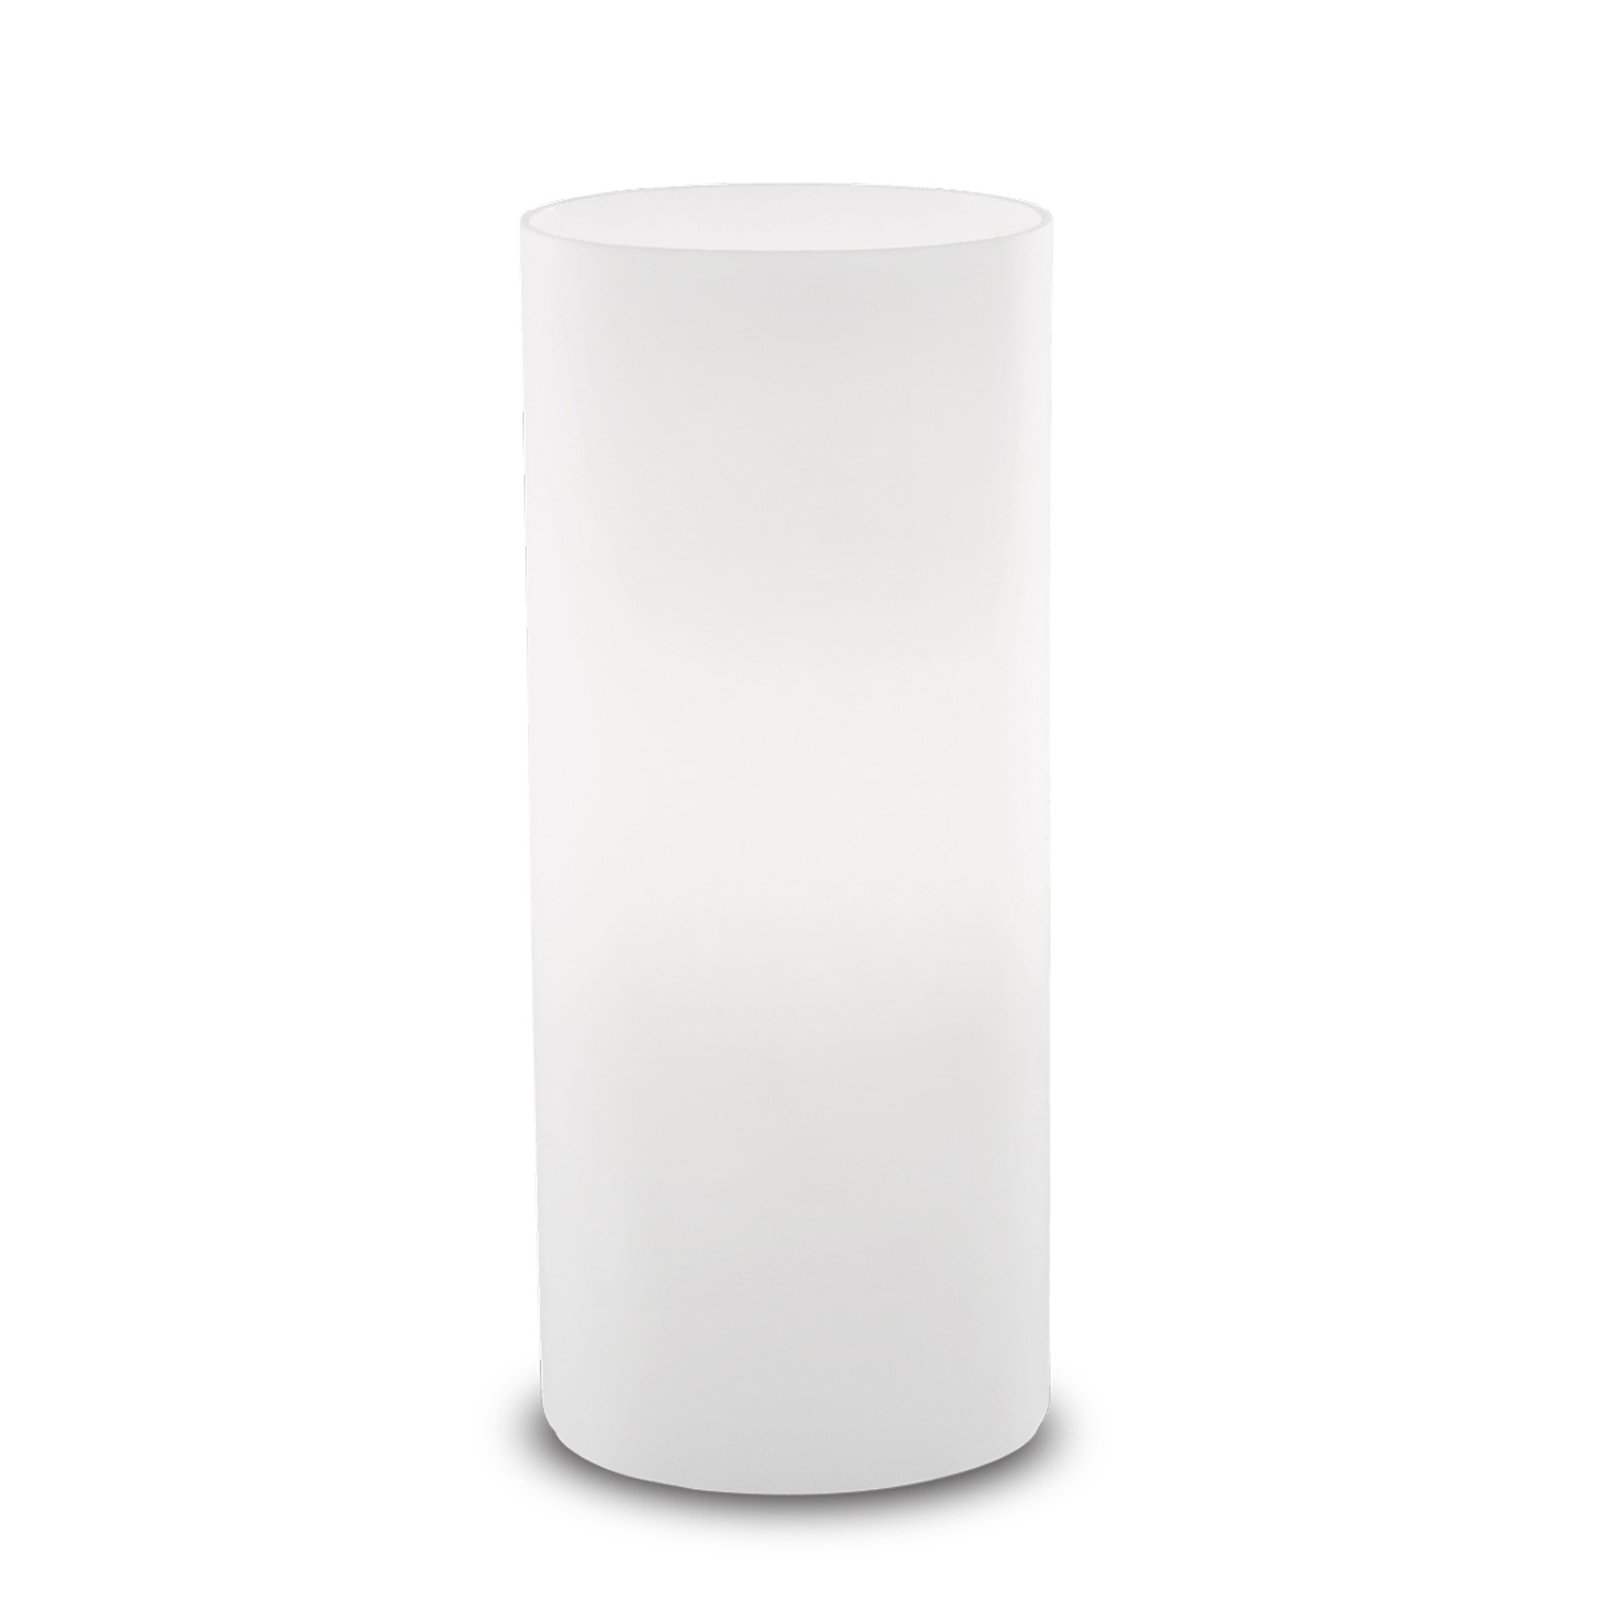 Edo asztali lámpa fehér üvegből, magassága 23 cm